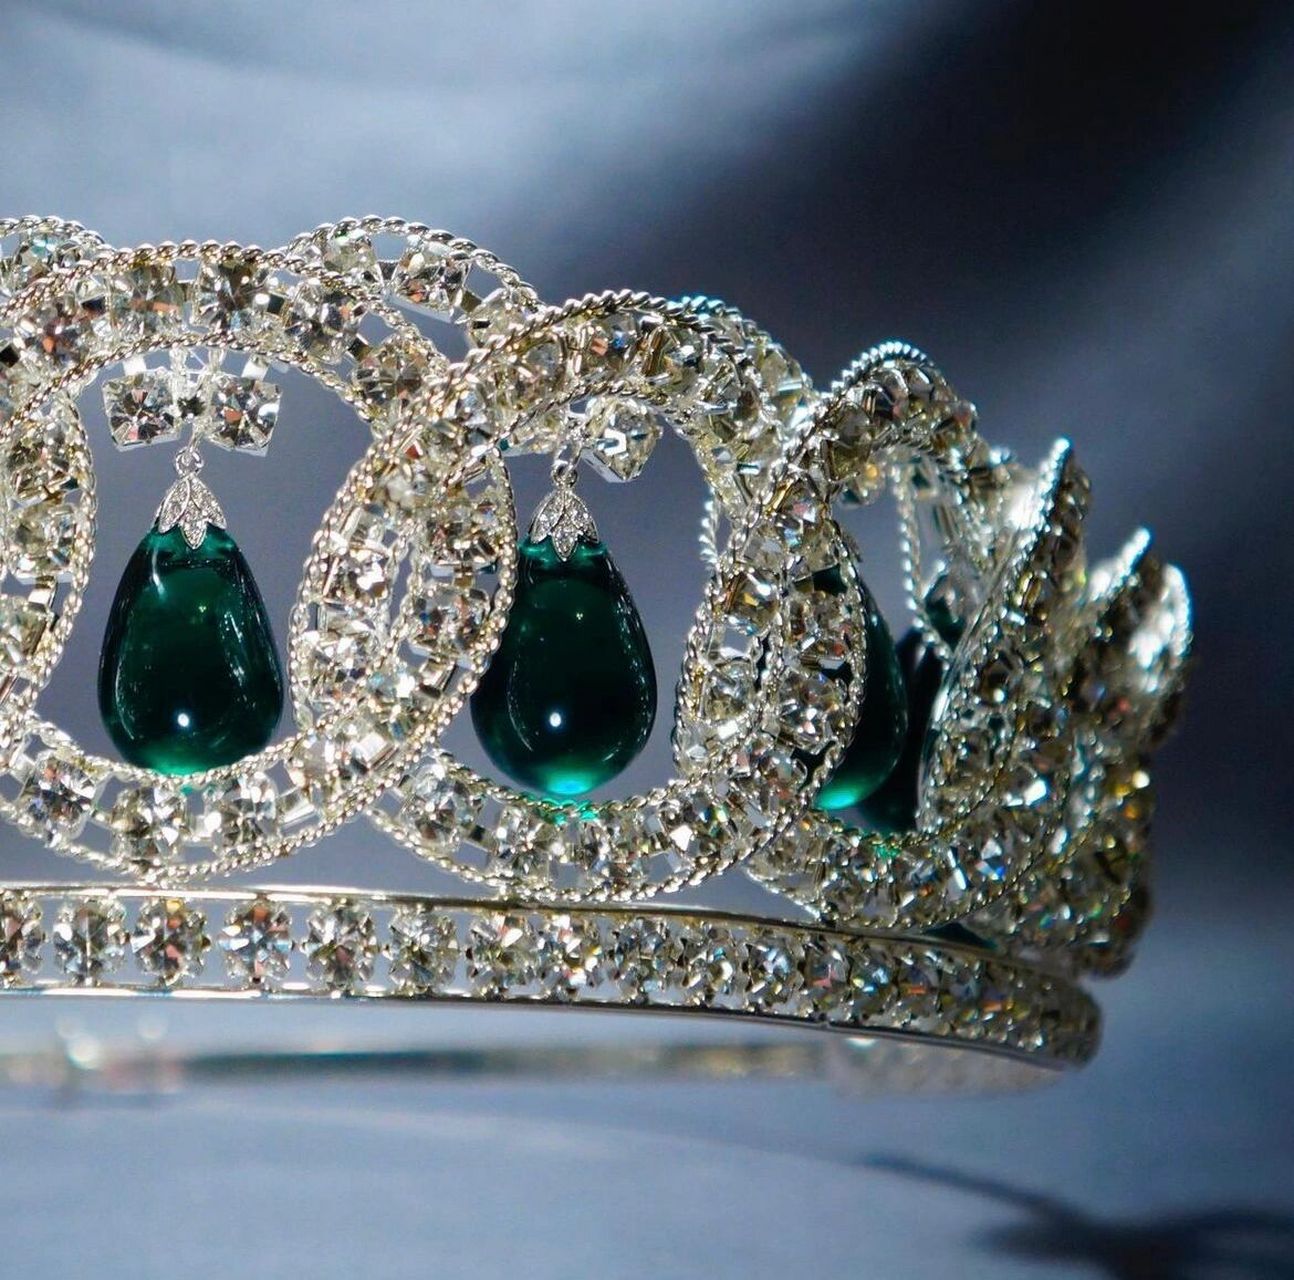 这枚皇冠在俄罗斯革命中幸存下来,成为世界上最迷人的皇室珠宝之一